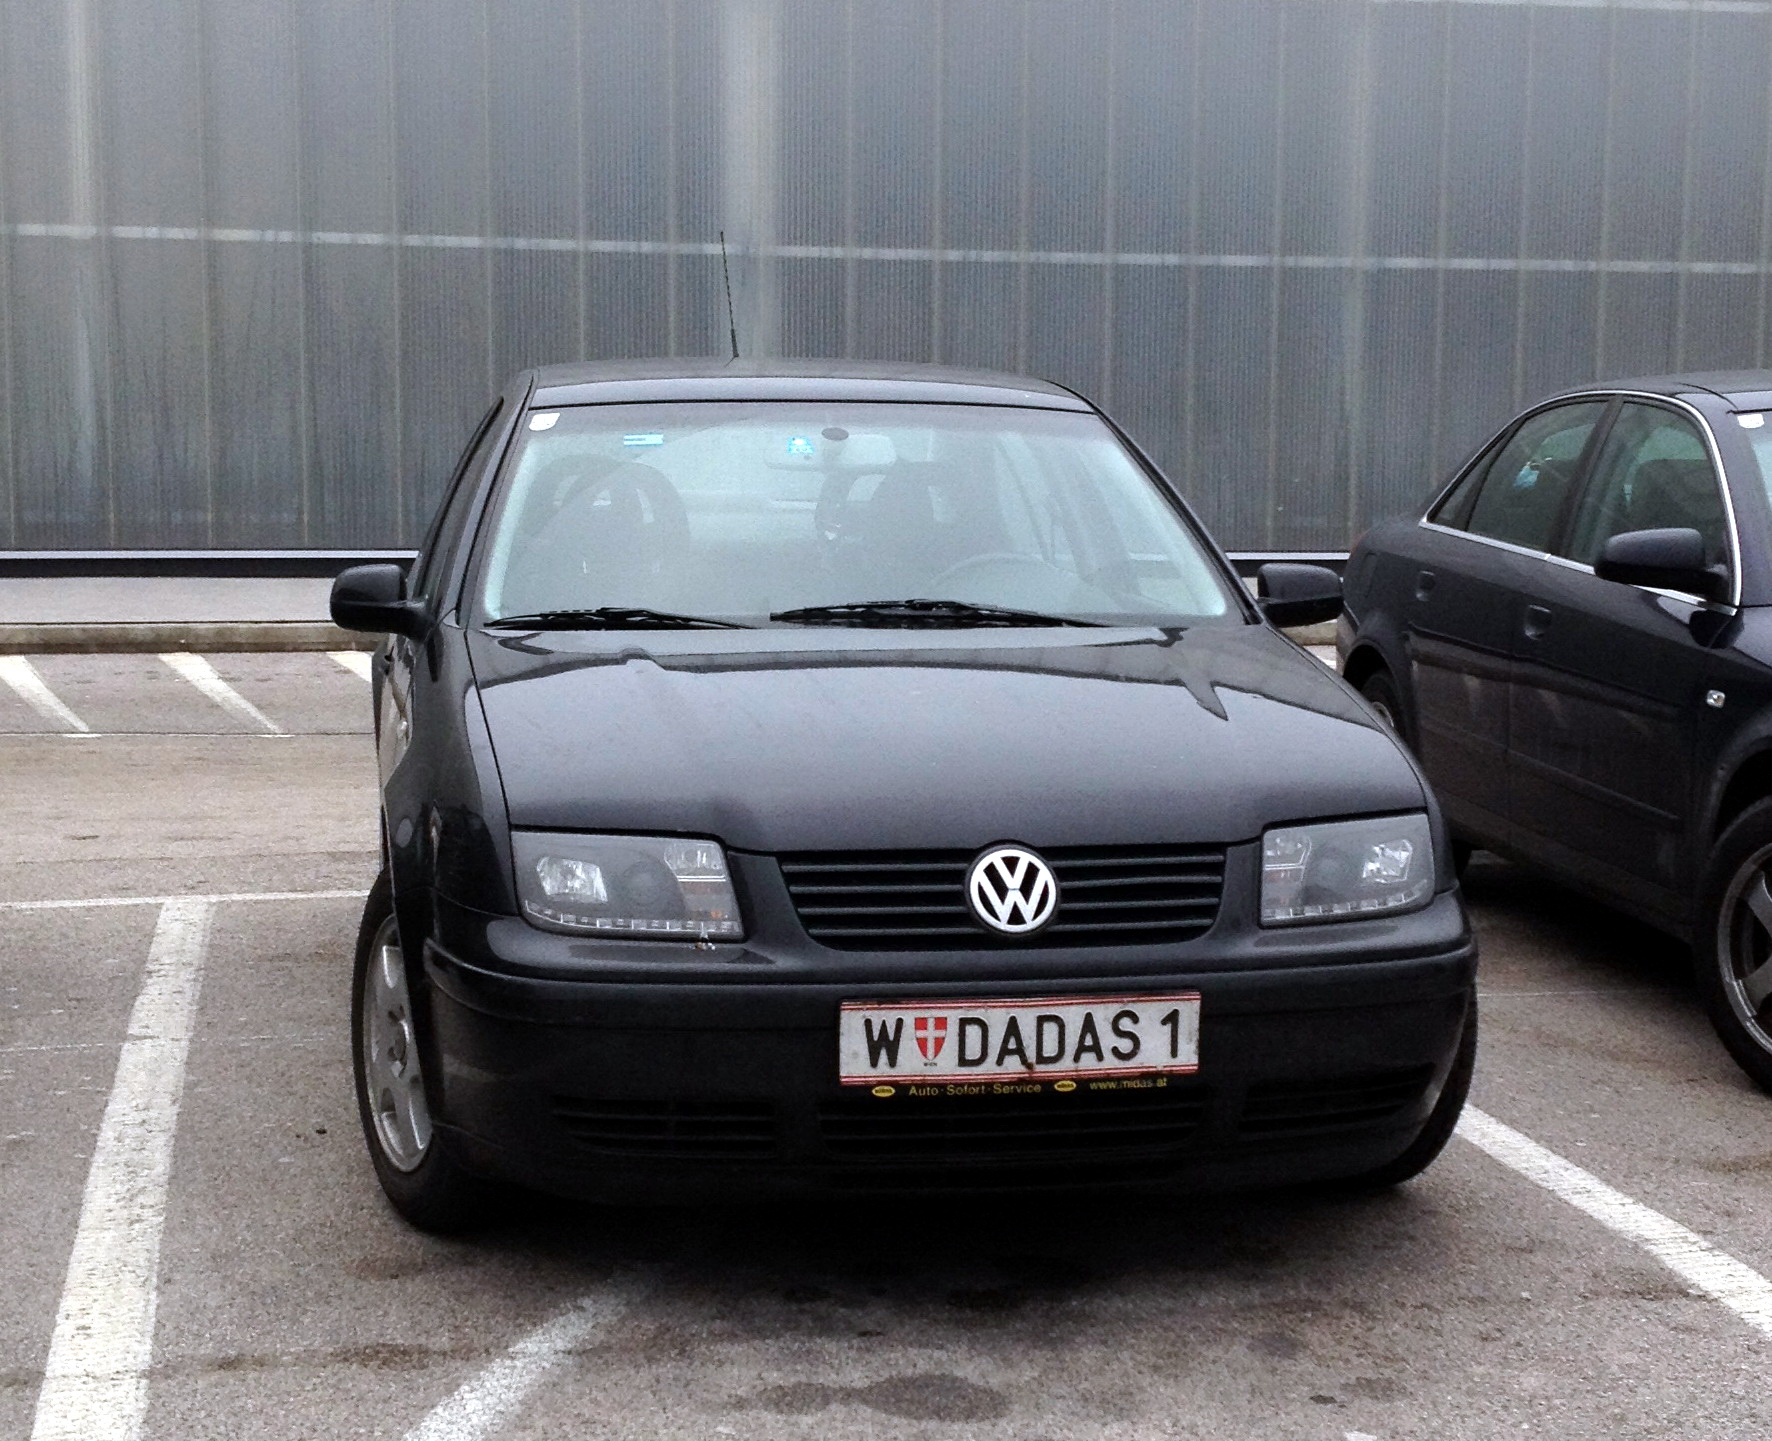 VW Bora girl